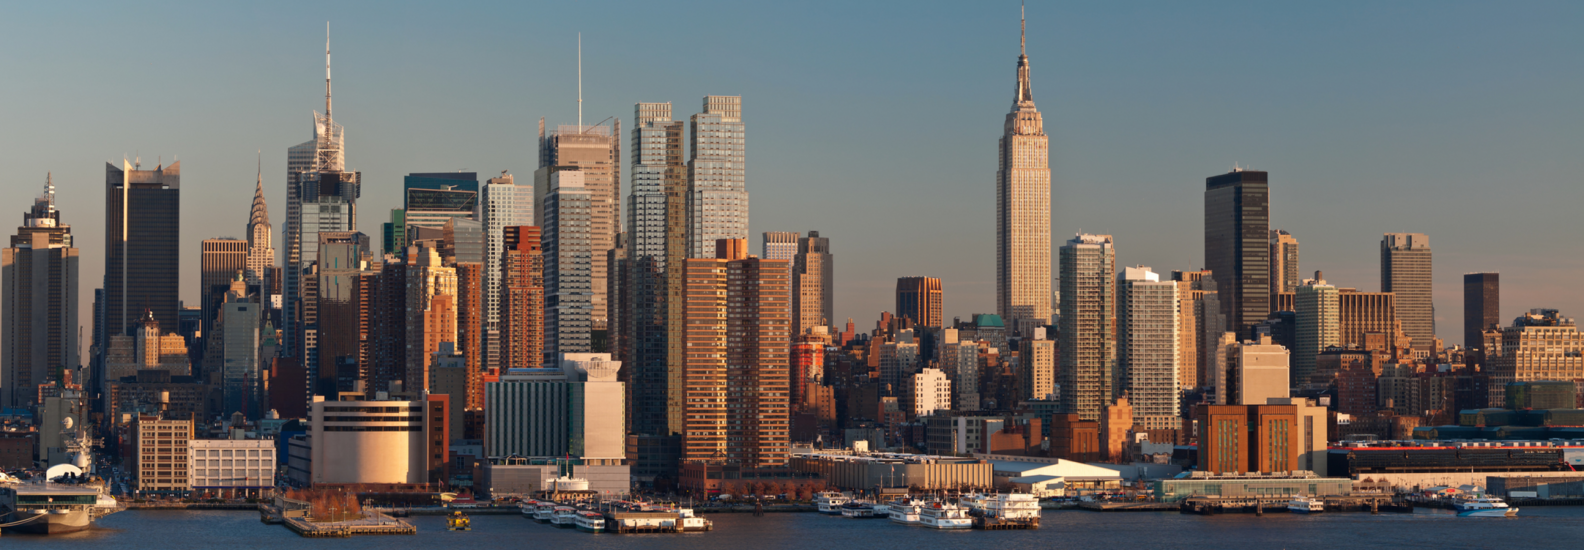 Manhattan skyline viewed from New Jersey